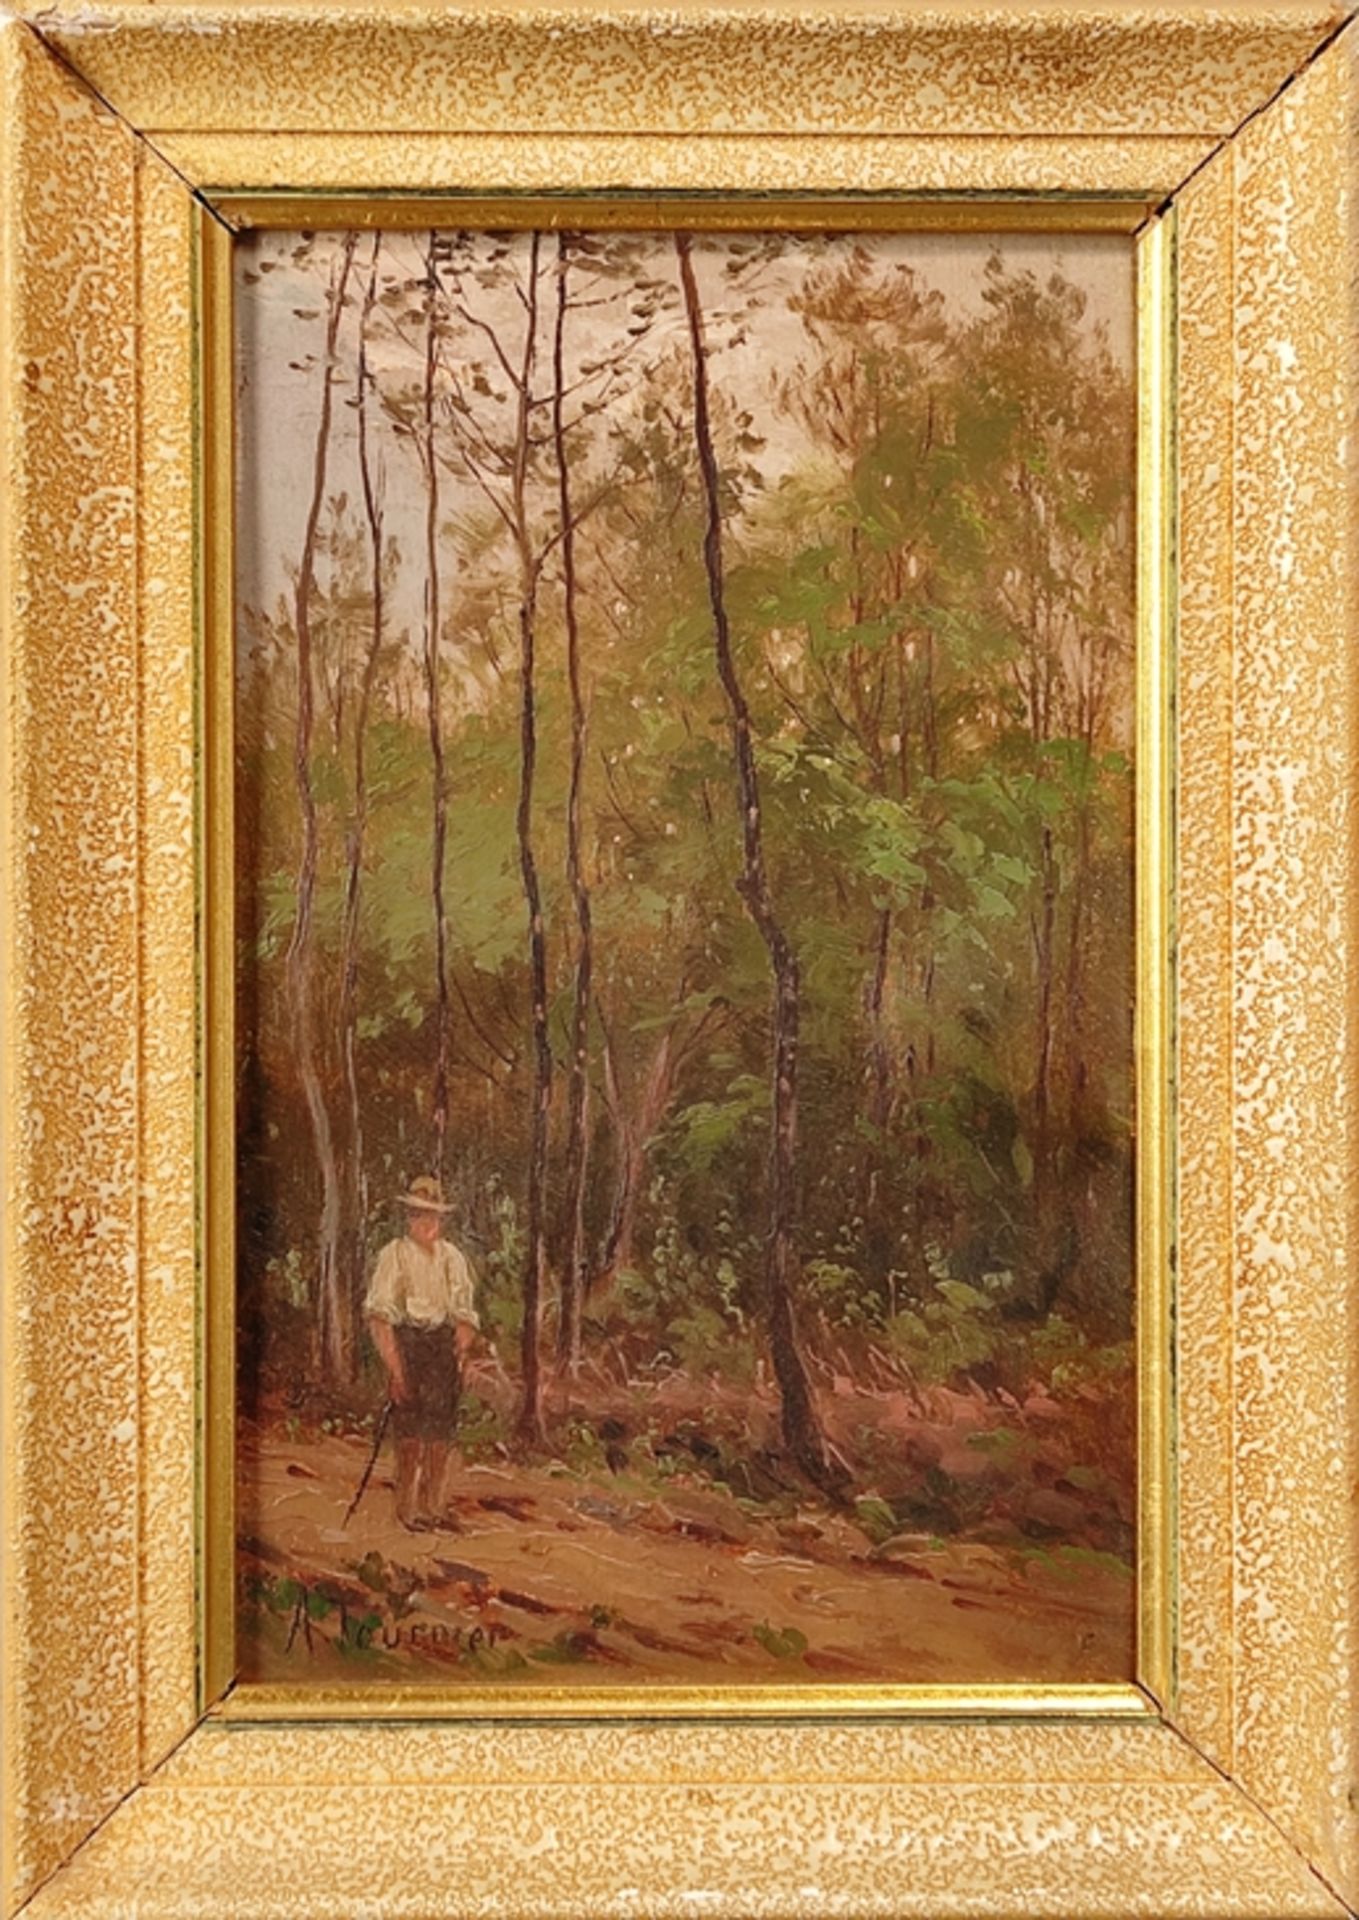 Tournier, A. (19. Jahrhundert) "Spaziergänger", Mann läuft mit Laufstock Waldweg entlang, Öl auf Ka - Bild 2 aus 3